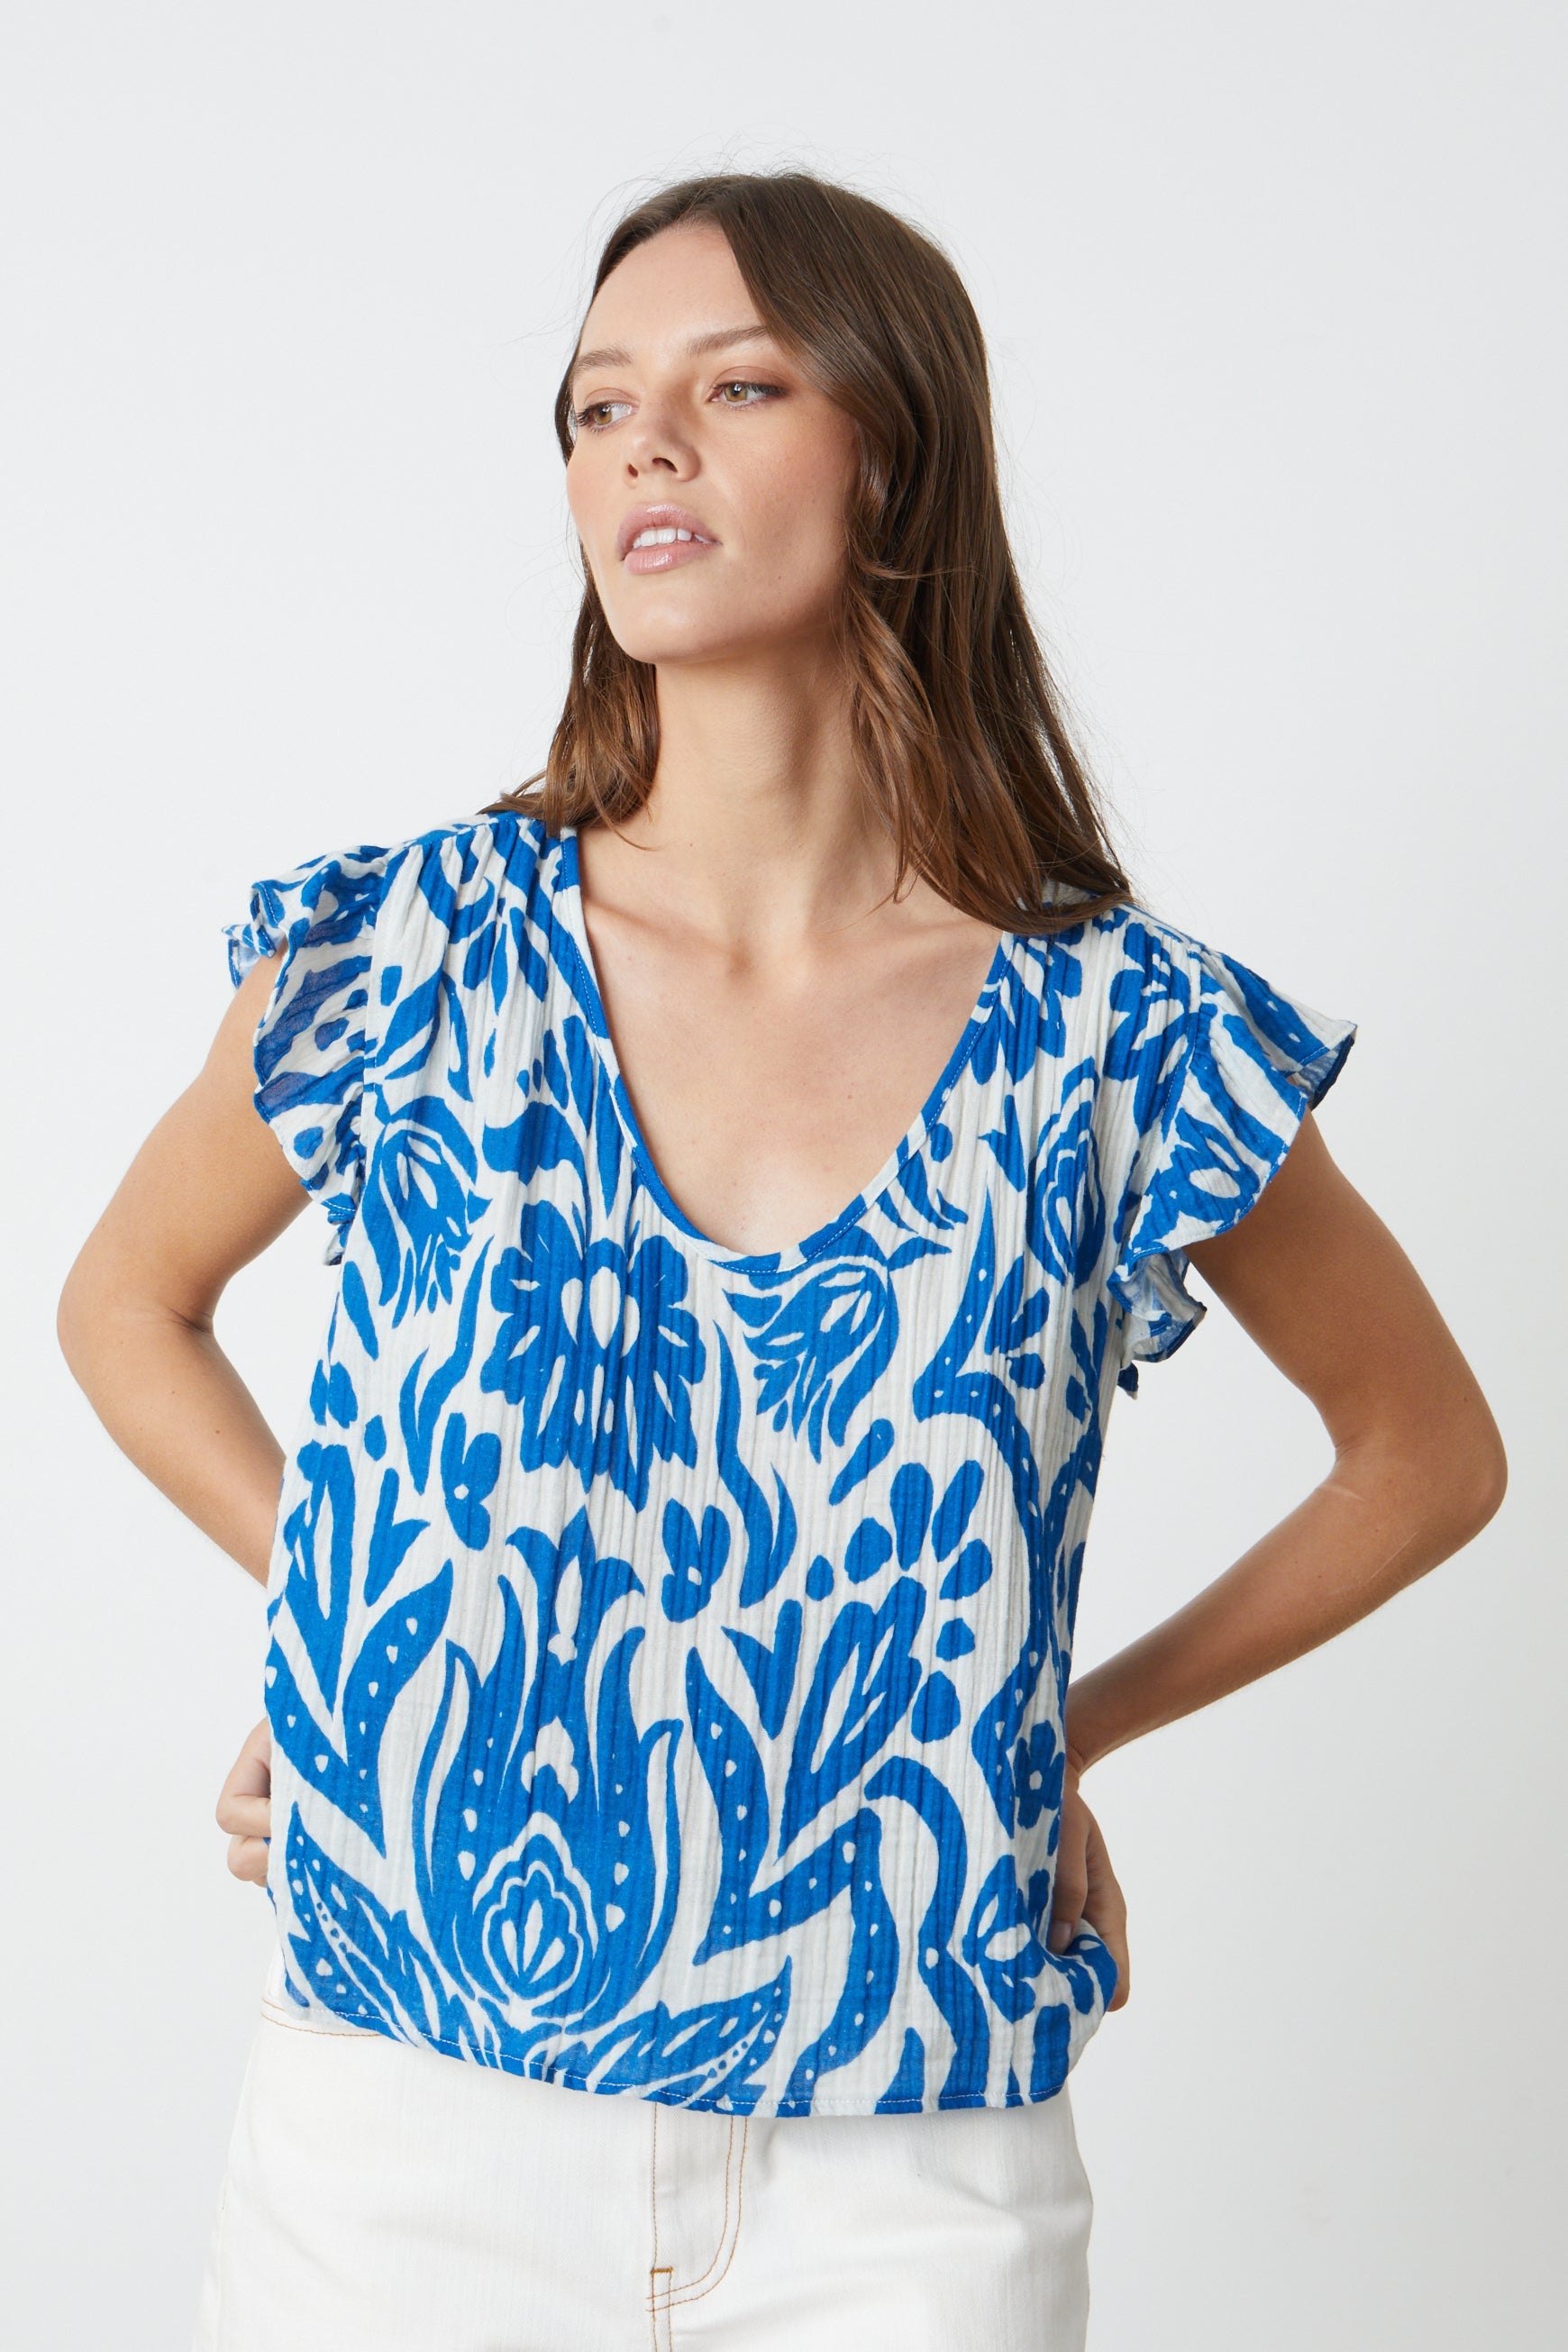 Velvet Aleah Blouse - Blue Clothing - Tops - Shirts - Blouses - Blouses Top Price by Velvet | Grace the Boutique